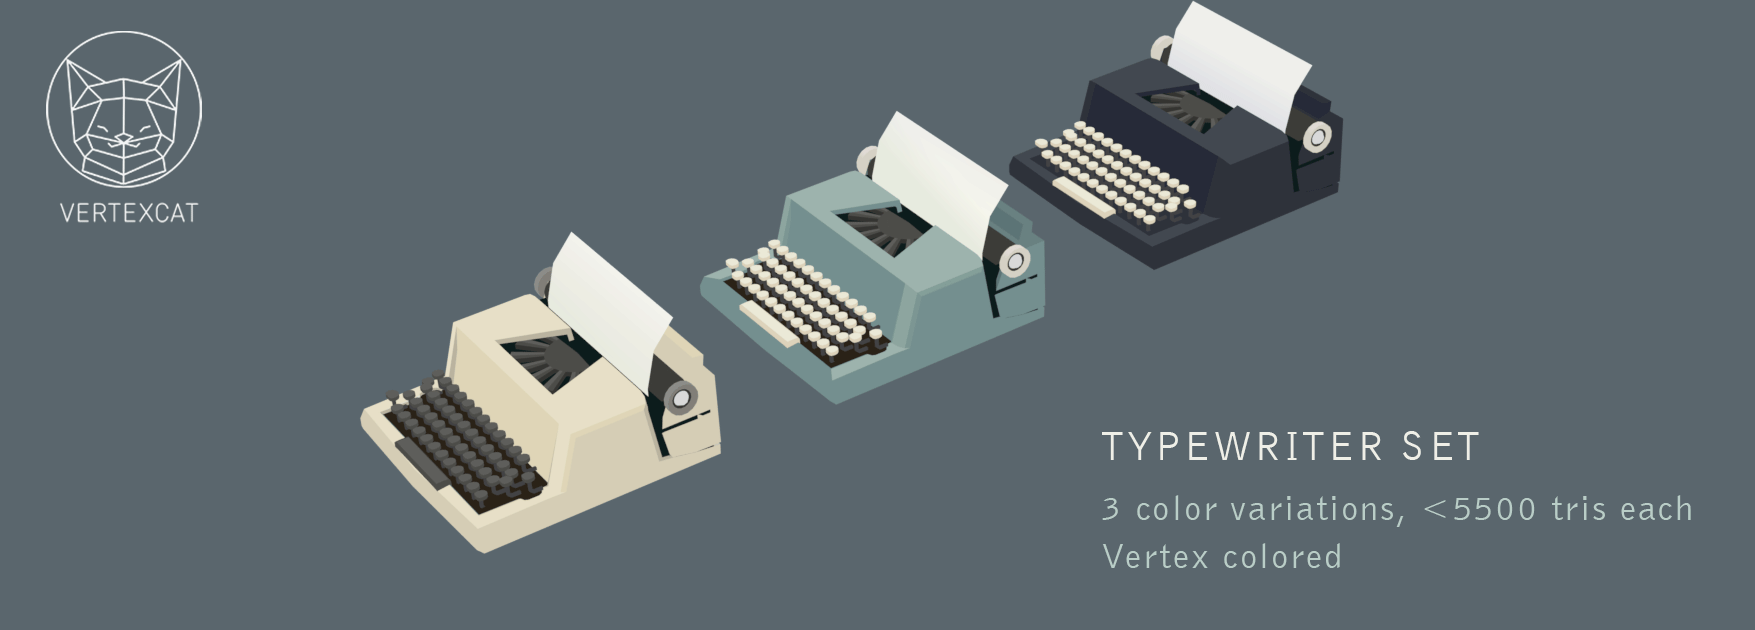 Typewriter set